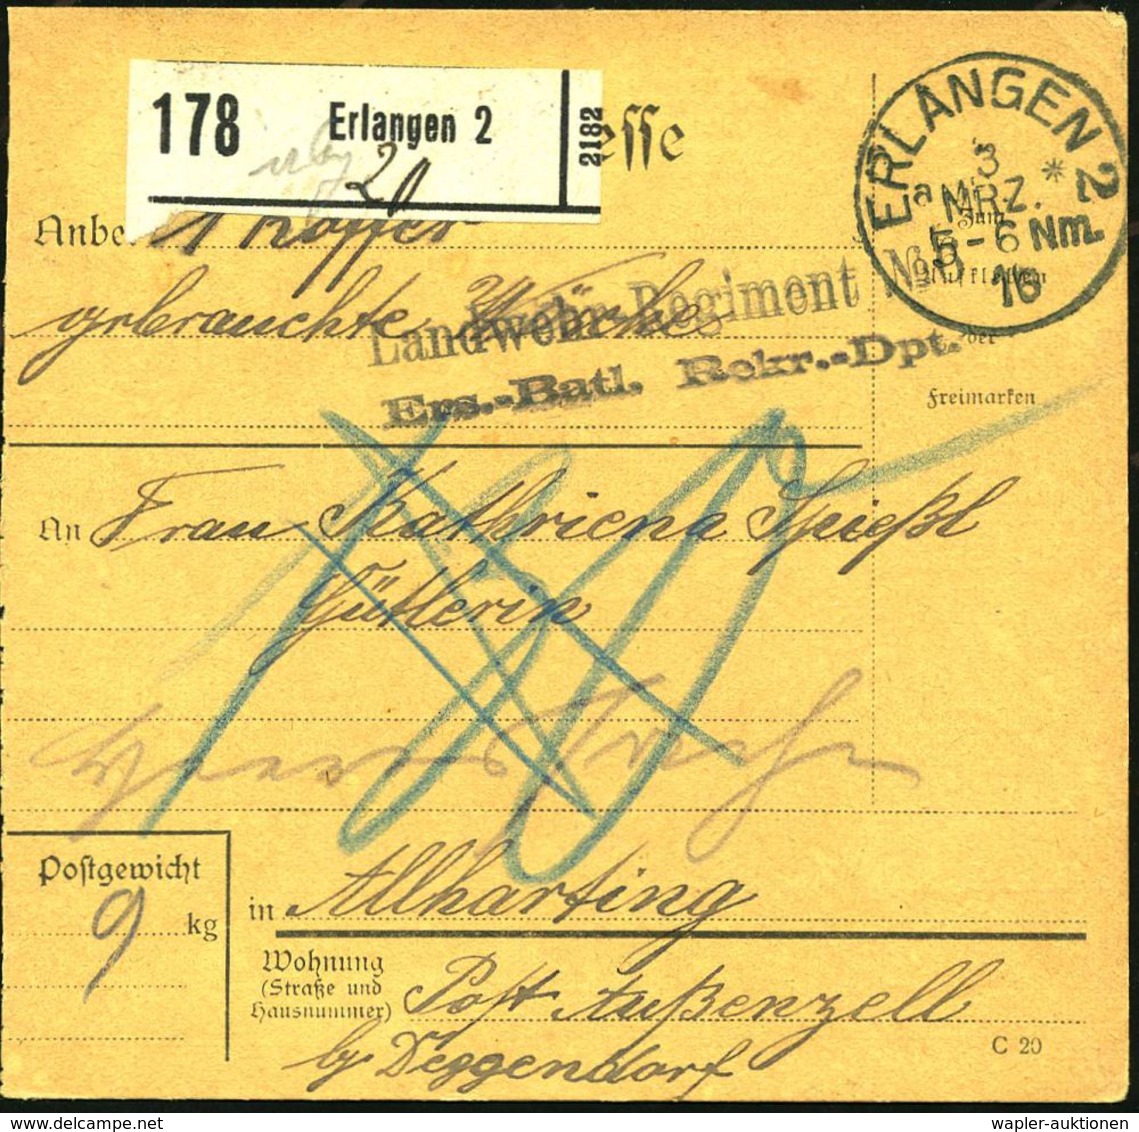 ERLANGEN 2/ A* 1916 (3.3.) 1K + Schw. Paketzettel: Erlangen 2 + Viol. 2L: Landwehr-Regiment No.6/Ers.-Batl. Rekr.-Dpt. M - WO1